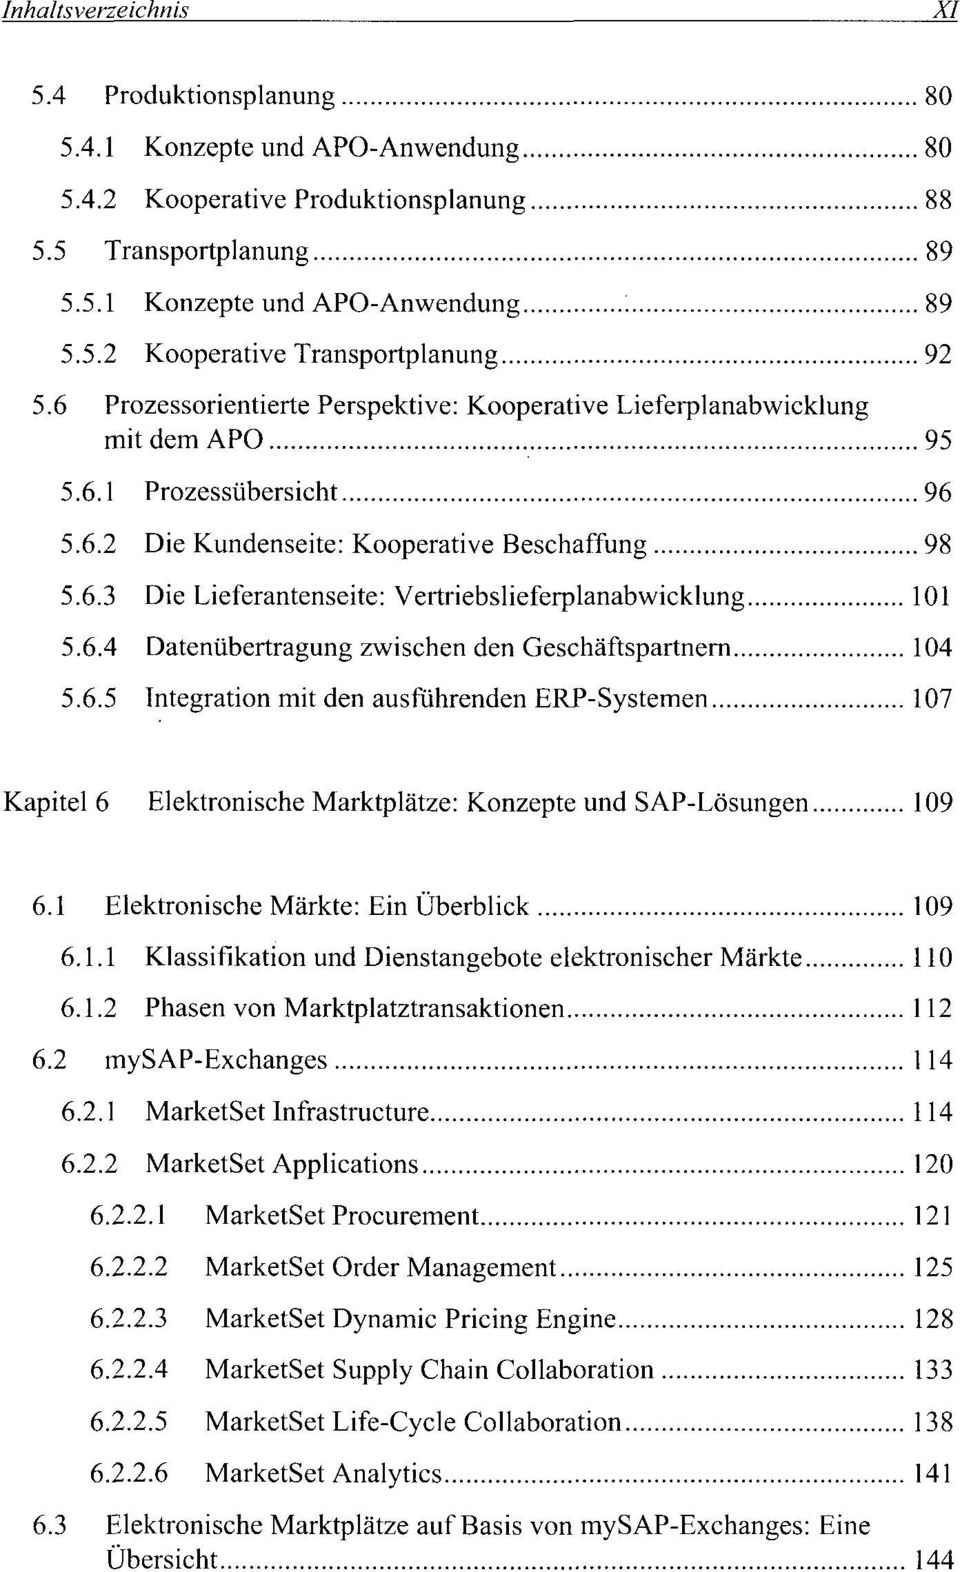 6.4 Datenübertragung zwischen den Geschäftspartnern 104 5.6.5 Integration mit den ausführenden ERP-Systemen 107 Kapitel 6 Elektronische Marktplätze: Konzepte und SAP-Lösungen 109 6.